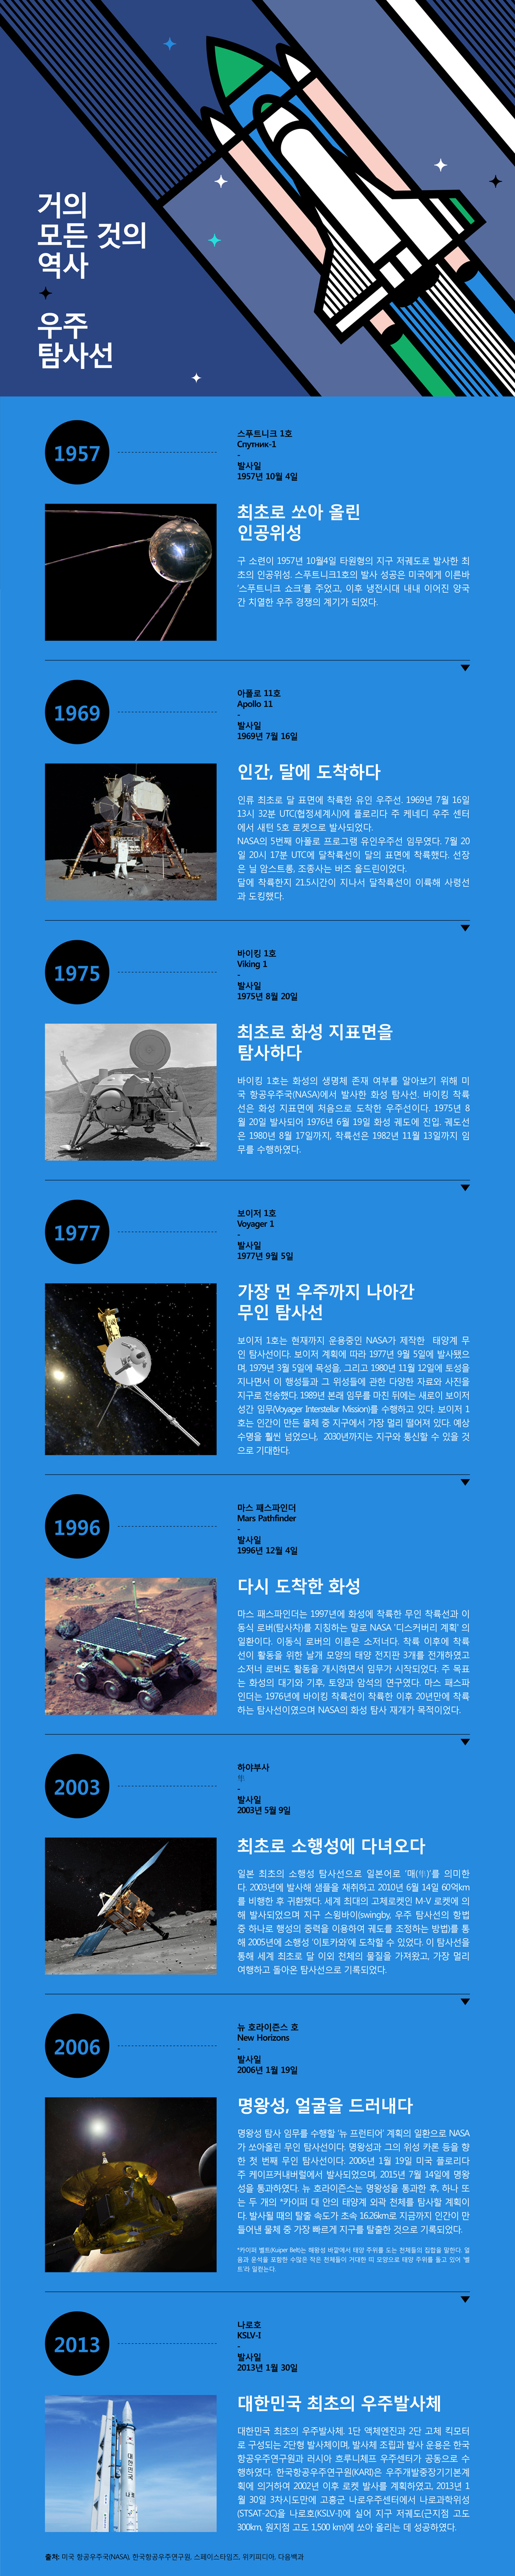 거의 모든 것의 역사 - 우주 탐사선  “최초로 쏘아 올린 인공위성” 스푸트니크 1호(Спутник-1)   발사일 : 1957년 10월 4일  구 소련이 1957년 10월4일 타원형의 지구 저궤도로 발사한 최초의 인공위성. 스푸트니크1호의 발사 성공은 미국에게 이른바 ‘스푸트니크 쇼크’를 주었고, 이후 냉전시대 내내 이어진 양국 간 치열한 우주 경쟁의 계기가 되었다.  “인간, 달에 도착하다” 아폴로 11호(Apollo 11)   발사일 : 1969년 7월 16일  인류 최초로 달 표면에 착륙한 유인 우주선. 1969년 7월 16일 13시 32분 UTC에 플로리다 주 케네디 우주 센터에서 새턴 5호 로켓으로 발사되었다. NASA의 5번째 아폴로 프로그램 유인우주선 임무였다. 7월 20일 20시 17분 UTC(협정세계시)에 달착륙선이 달의 표면에 착륙했다. 선장은 닐 암스트롱 중위, 조종사는 버즈 올드린이었다. 달에 착륙한지 21.5시간이 지나서 달착륙선이 이륙해 사령선과 도킹했다.  “최초로 화성 지표면을 탐사하다” 바이킹 1호(Viking 1) 발사일 : 1975년 8월 20일 바이킹 1호는 화성의 생명체 존재 여부를 알아보기 위해 미국 항공우주국(NASA)에서 발사한 화성 탐사선. 바이킹 착륙선은 화성 지표면에 처음으로 도착한 우주선이다. 1975년 8월 20일 발사되어 1976년 6월 19일 화성 궤도에 진입. 궤도선은 1980년 8월 17일까지, 착륙선은 1982년 11월 13일까지 임무를 수행하였다.   “가장 먼 우주까지 나아간 무인 탐사선” 보이저 1호 (Voyager 1)   발사일 : 1977년 9월 5일  보이저 1호는 현재까지 운용중인 NASA가 제작한  태양계 무인 탐사선이다. 보이저 계획에 따라 1977년 9월 5일에 발사됐으며, 1979년 3월 5일에 목성을, 그리고 1980년 11월 12일에 토성을 지나면서 이 행성들과 그 위성들에 관한 다양한 자료와 사진을 지구로 전송했다. 1989년 본래 임무를 마친 뒤에는 새로이 보이저 성간 임무(Voyager Interstellar Mission)를 수행하고 있다. 보이저 1호는 인간이 만든 물체 중 지구에서 가장 멀리 떨어져 있다. 예상 수명을 훨씬 넘었으나,  2030년까지는 지구와 통신할 수 있을 것으로 기대한다.  “다시 도착한 화성” 마스 패스파인더 (Mars Pathfinder)  발사일 : 1996년 12월 4일 마스 패스파인더는 1997년에 화성에 착륙한 무인 착륙선과 이동식 로버(탐사차)를 지칭하는 말로 NASA '디스커버리 계획' 의 일환이다. 이동식 로버의 이름은 소저너다. 착륙 이후에 착륙선이 활동을 위한 날개 모양의 태양 전지판 3개를 전개하였고 소저너 로버도 활동을 개시하면서 임무가 시작되었다. 주 목표는 화성의 대기와 기후, 토양과 암석의 연구였다. 마스 패스파인더는 1976년에 바이킹 착륙선이 착륙한 이후 20년만에 착륙하는 탐사선이였으며 NASA의 화성 탐사 재개가 목적이었다.    “최초로 소행성에 다녀오다” 하야부사(隼)  발사일 : 2003년 5월 9일  일본 최초의 소행성 탐사선으로 일본어로 ‘매(隼)’를 의미한다. 2003년에 발사해 샘플을 채취하고 2010년 6월 14일 60억km를 비행한 후 귀환했다. 세계 최대의 고체로켓인 M-V 로켓에 의해 발사되었으며 지구 스윙바이(swingby, 우주 탐사선의 항법 중 하나로 행성의 중력을 이용하여 궤도를 조정하는 방법)를 통해 2005년에 소행성 ‘이토카와’에 도착할 수 있었다. 이 탐사선을 통해 세계 최초로 달 이외 천체의 물질을 가져왔고, 가장 멀리 여행하고 돌아온 탐사선으로 기록되었다.  “명왕성, 얼굴을 드러내다” 뉴 호라이즌스 호(New Horizons)  발사일 : 2006년 1월 19일 명왕성 탐사 임무를 수행할 ‘뉴 프런티어’ 계획의 일환으로 NASA가 쏘아올린 무인 탐사선이다. 명왕성과 그의 위성 카론 등을 향한 첫 번째 무인 탐사선이다. 2006년 1월 19일 미국 플로리다주 케이프커내버럴에서 발사되었으며, 2015년 7월 14일에 명왕성을 통과하였다. 뉴 호라이즌스는 명왕성을 통과한 후, 하나 또는 두 개의 *카이퍼 대 안의 태양계 외곽 천체를 탐사할 계획이다. 발사될 때의 탈출 속도가 초속 16.26km로 지금까지 인간이 만들어낸 물체 중 가장 빠르게 지구를 탈출한 것으로 기록되었다.  *카이퍼 벨트(Kuiper Belt)는 해왕성 바깥에서 태양 주위를 도는 천체들의 집합을 말한다. 얼음과 운석을 포함한 수많은 작은 천체들이 거대한 띠 모양으로 태양 주위를 돌고 있어 ‘벨트’라 일컫는다.  “대한민국 최초의 우주발사체” 나로호(KSLV-I) 발사일 : 2013년 1월 30일 대한민국 최초의 우주발사체. 1단 액체엔진과 2단 고체 킥모터로 구성되는 2단형 발사체이며, 발사체 조립과 발사 운용은 한국항공우주연구원과 러시아 흐루니체프 우주센터가 공동으로 수행하였다. 한국항공우주연구원(KARI)은 우주개발중장기기본계획에 의거하여 2002년 이후 로켓 발사를 계획하였고, 2013년 1월 30일 3차시도만에 고흥군 나로우주센터에서 나로과학위성(STSAT-2C)을 나로호(KSLV-I)에 실어 지구 저궤도(근지점 고도300km, 원지점 고도 1,500 km)에 쏘아 올리는 데 성공하였다.   출처 : 미국 항공우주국(NASA), 한국항공우주연구원, spacetimes.co.kr, 위키피디아, 다음백과 